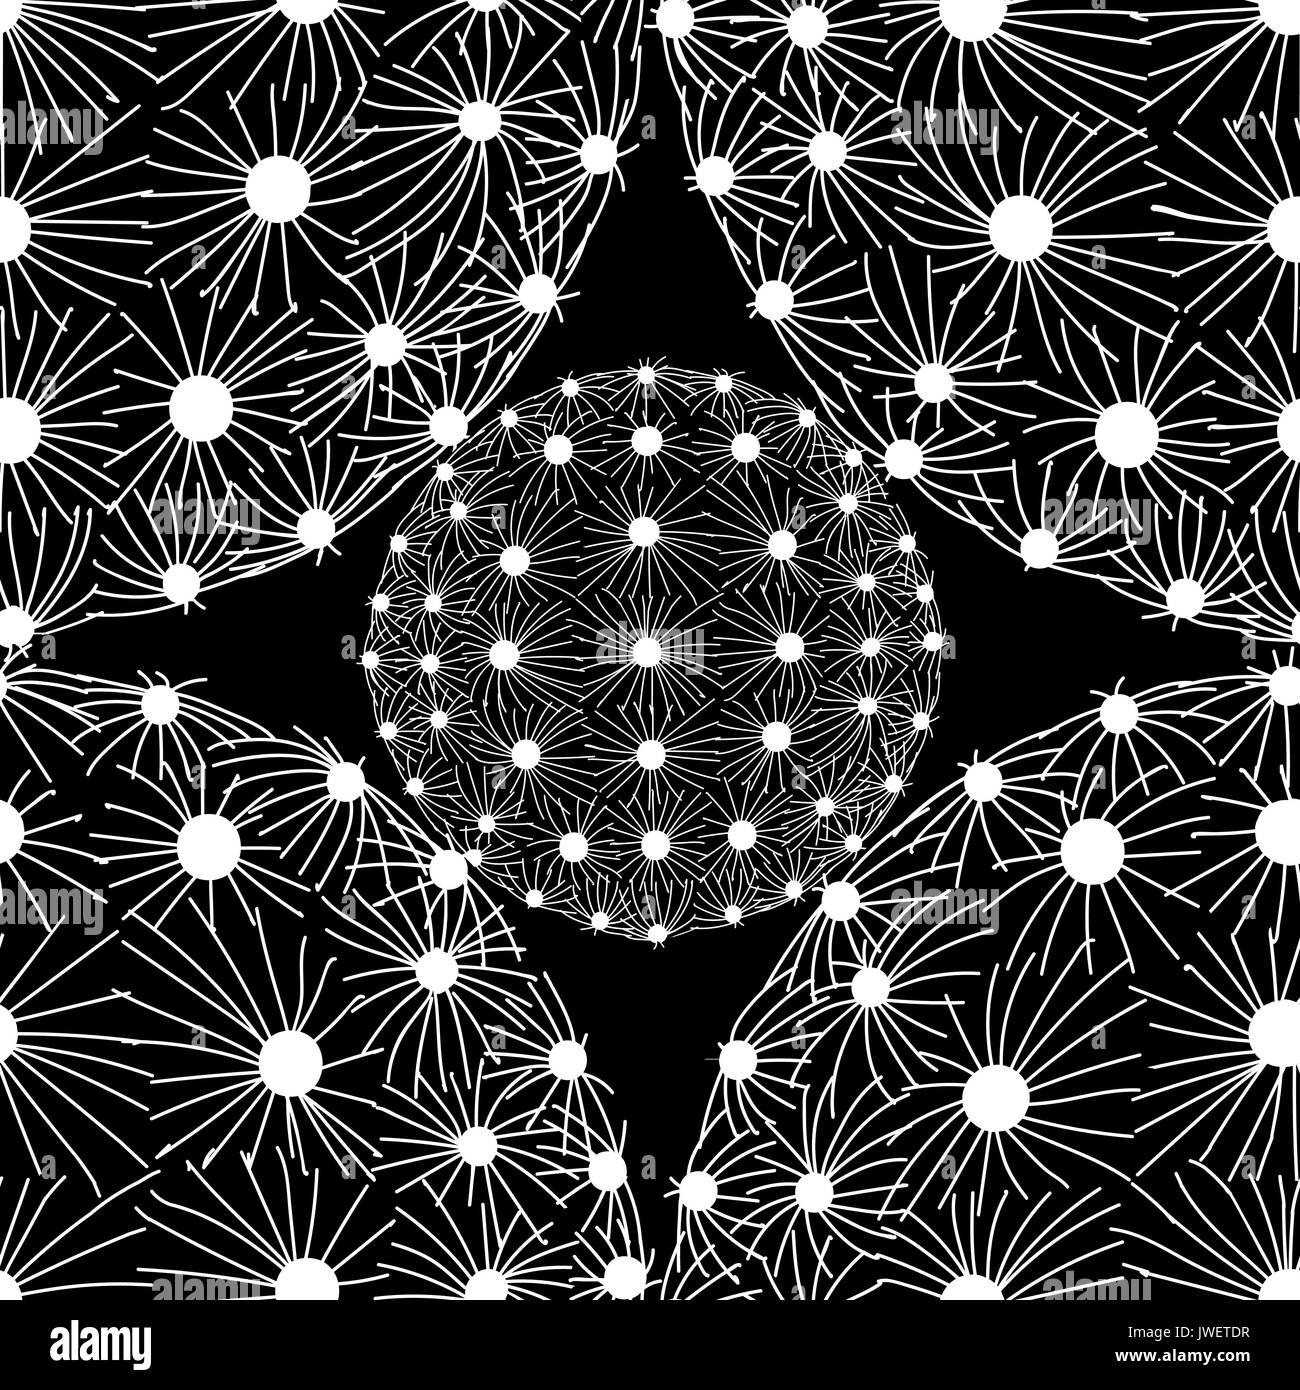 Weißer umriss Sukkulenten auf schwarzem Hintergrund. Der weiße Punkt und Linie in runder Form auf schwarzem Hintergrund. Hand gezeichneten Stil. nahtlose Muster vektor Lllustrat Stock Vektor